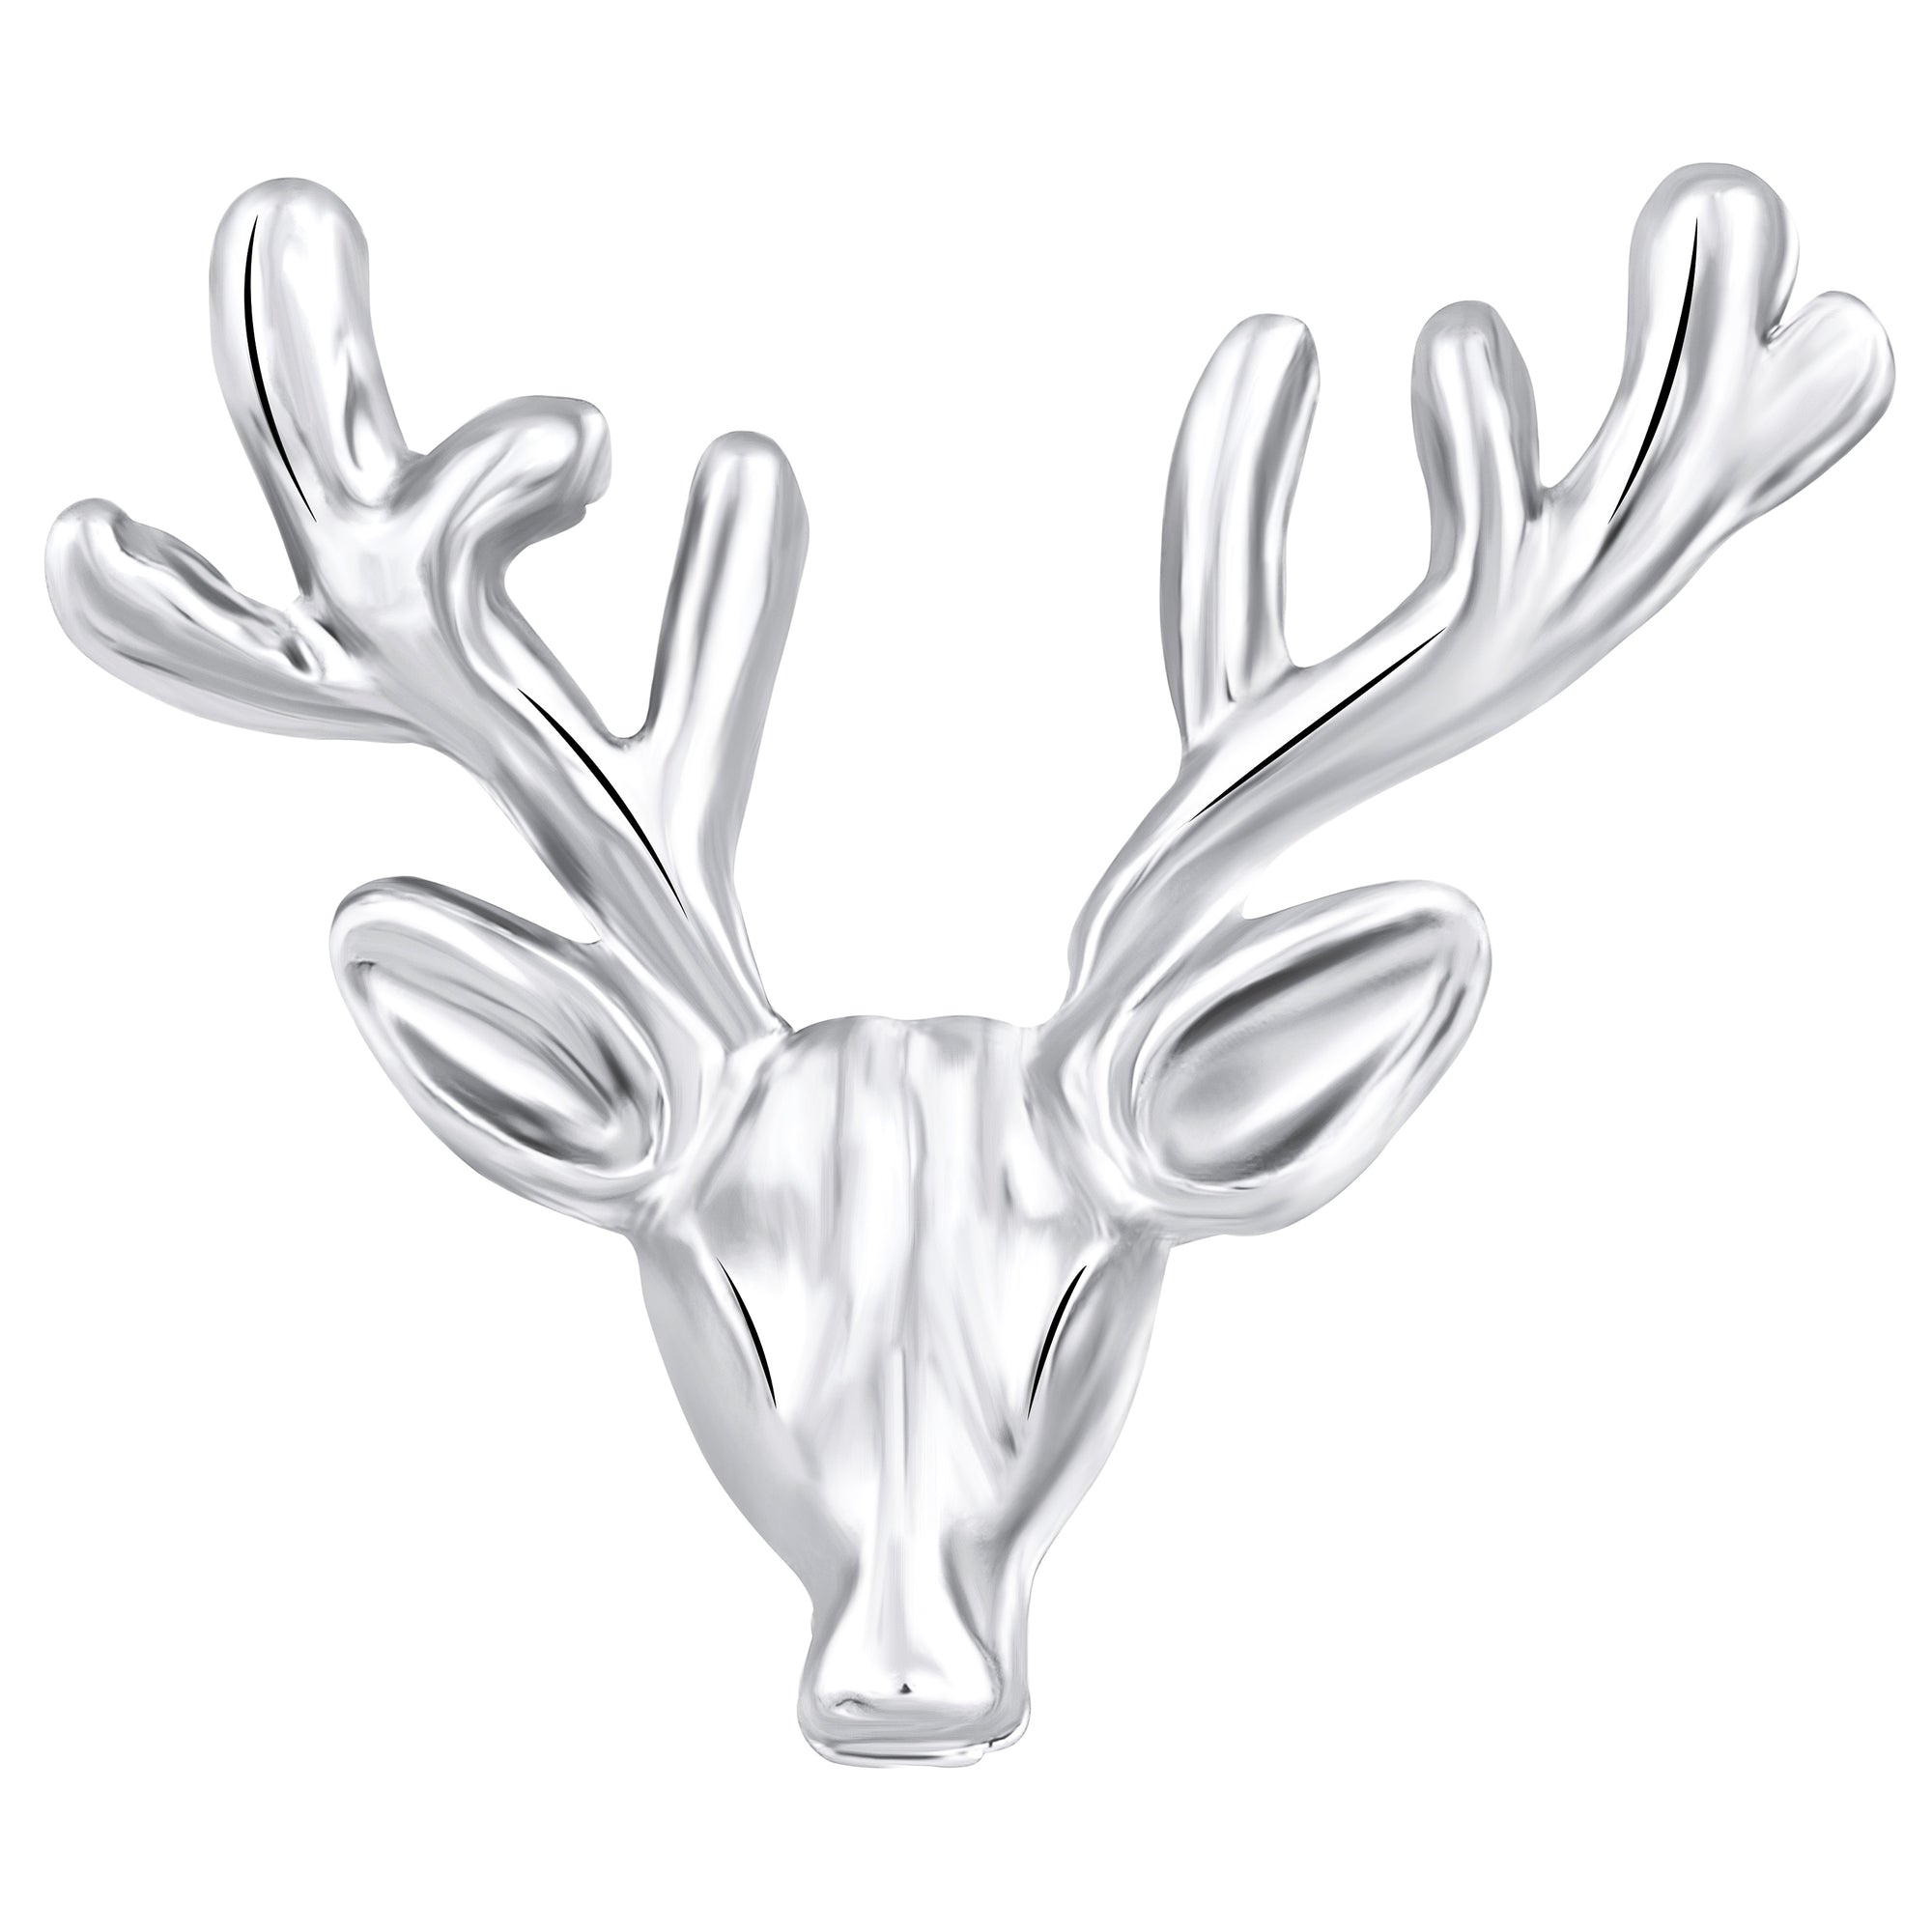 Deer-Face Shaped Brooch / Lapel Pin